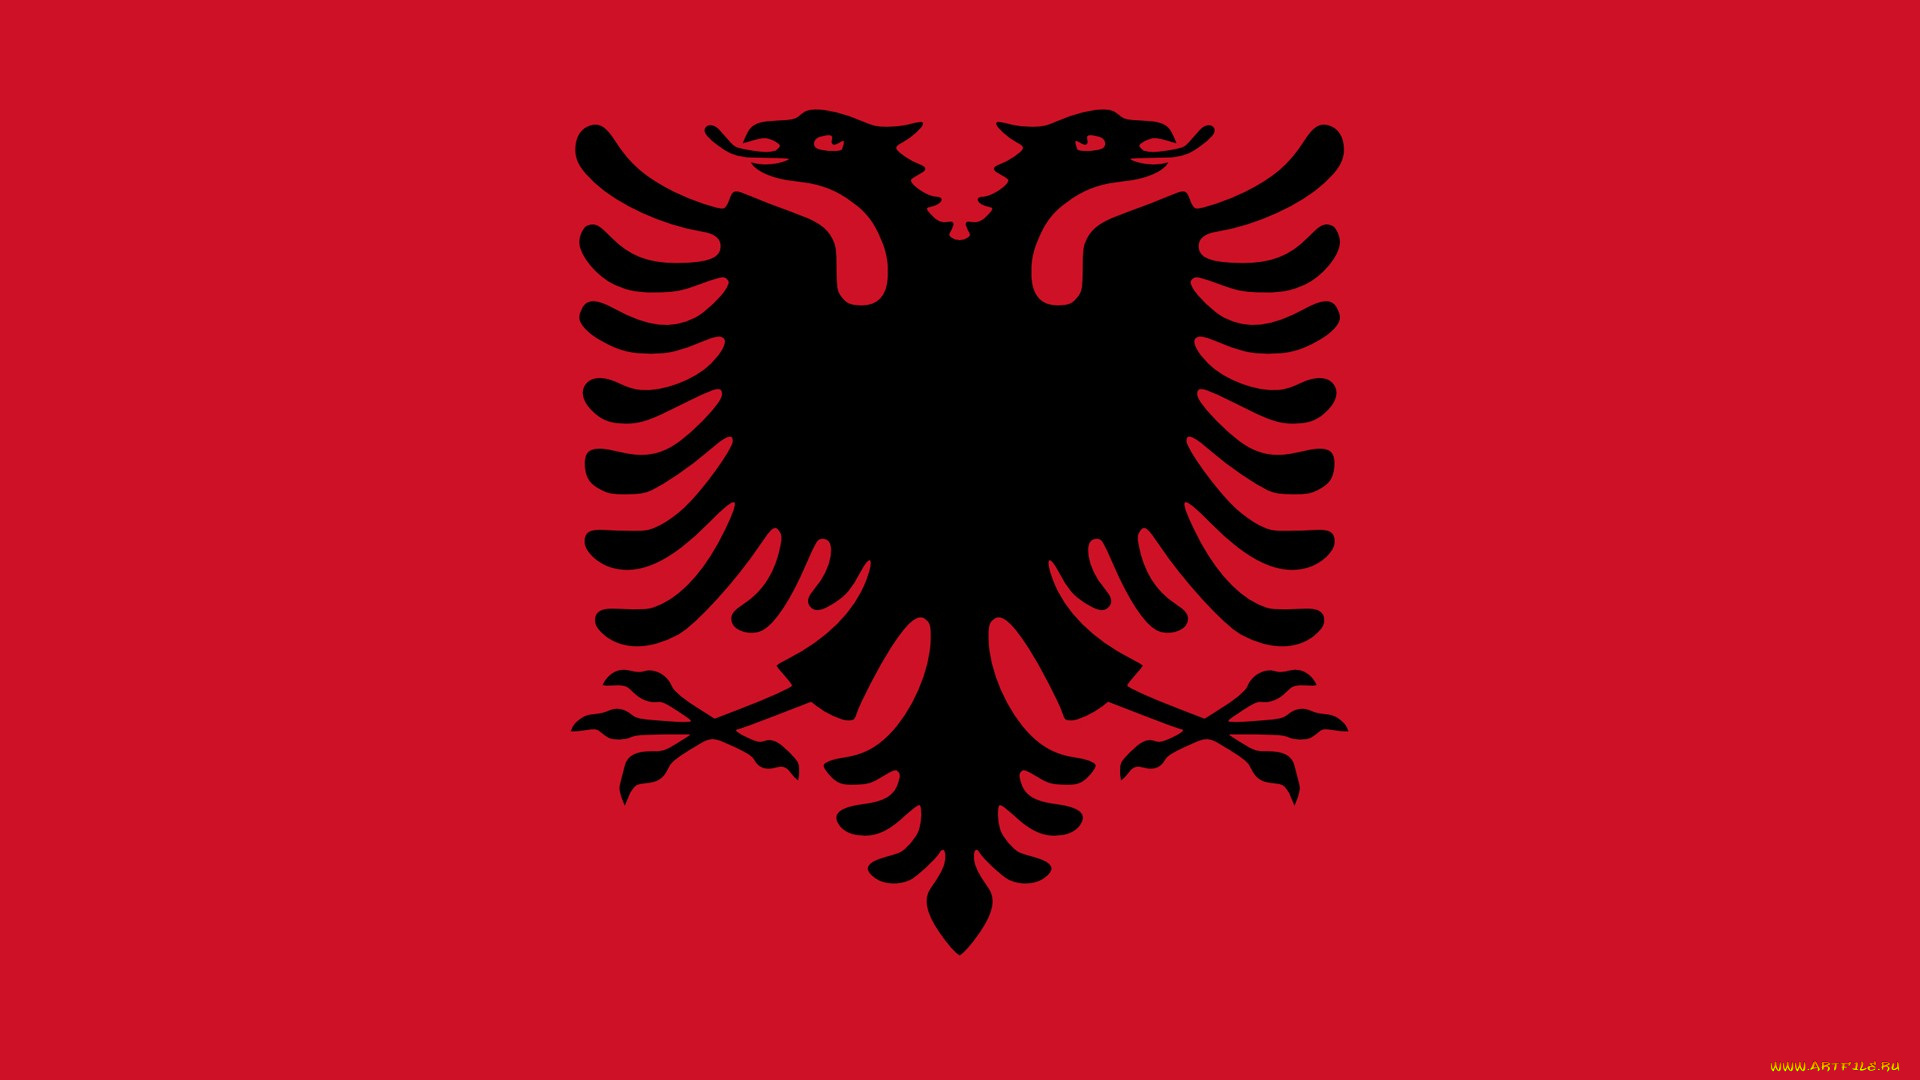 албания, разное, флаги, гербы, красный, двуглавый, орел